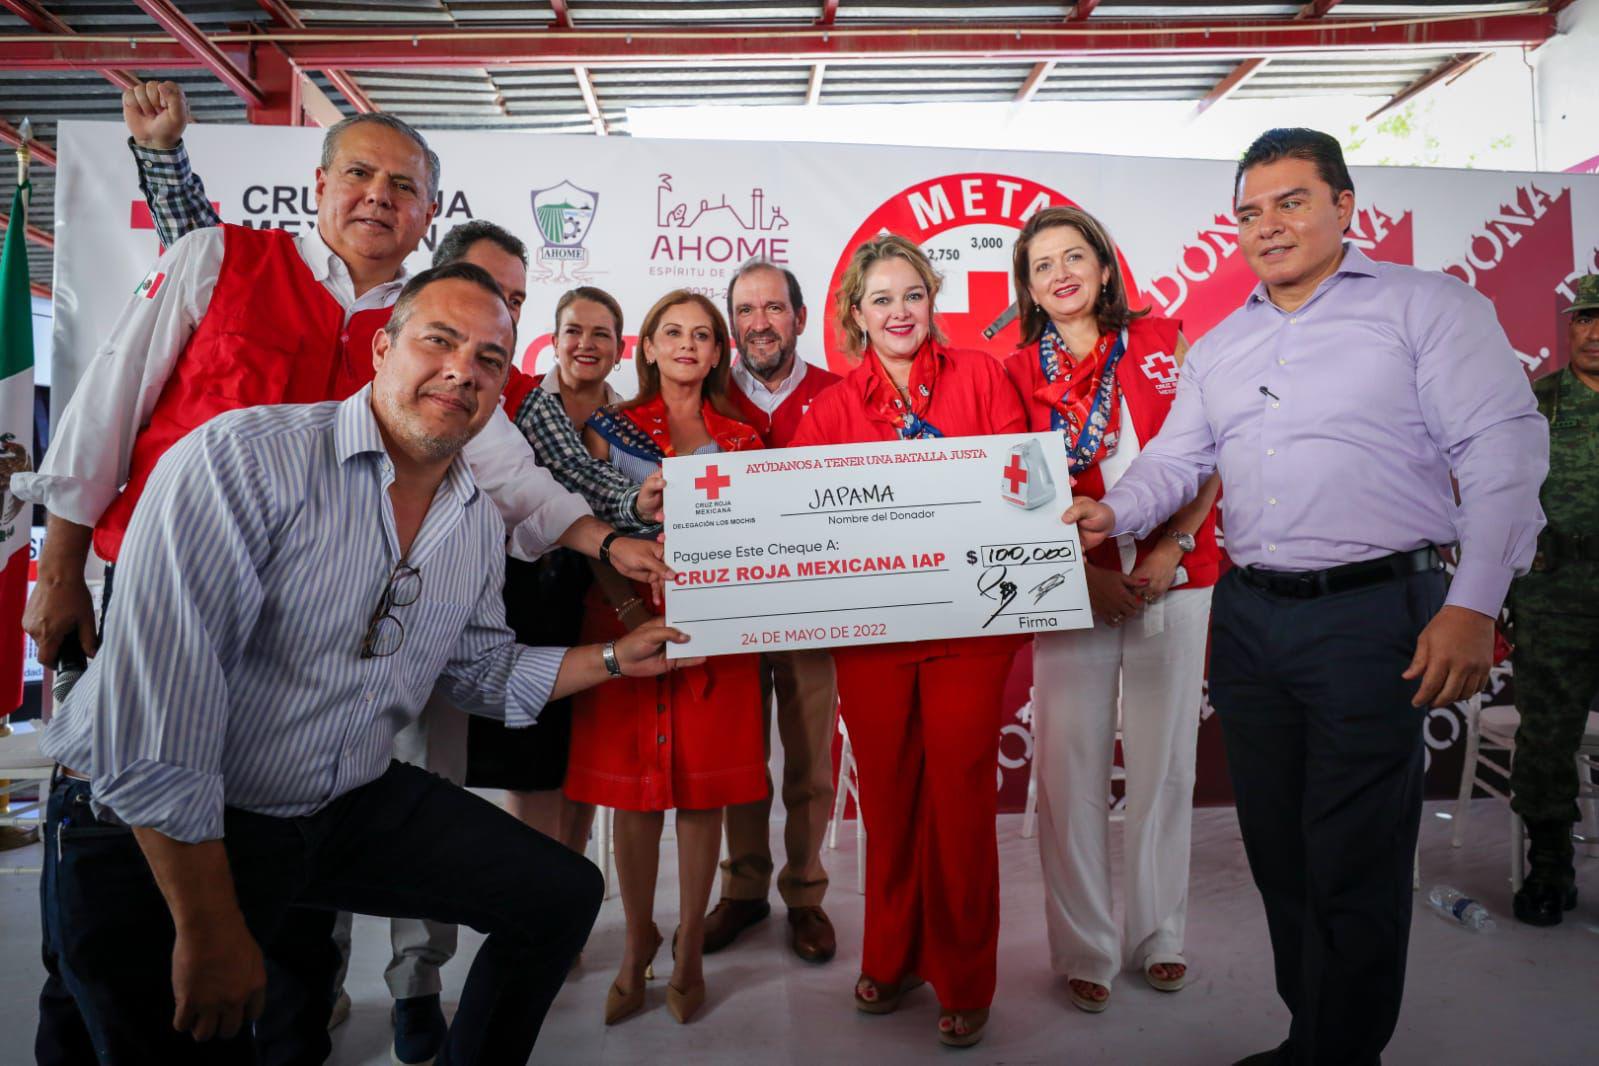 $!Buscan recaudar 3 millones en colecta de Cruz Roja Los Mochis